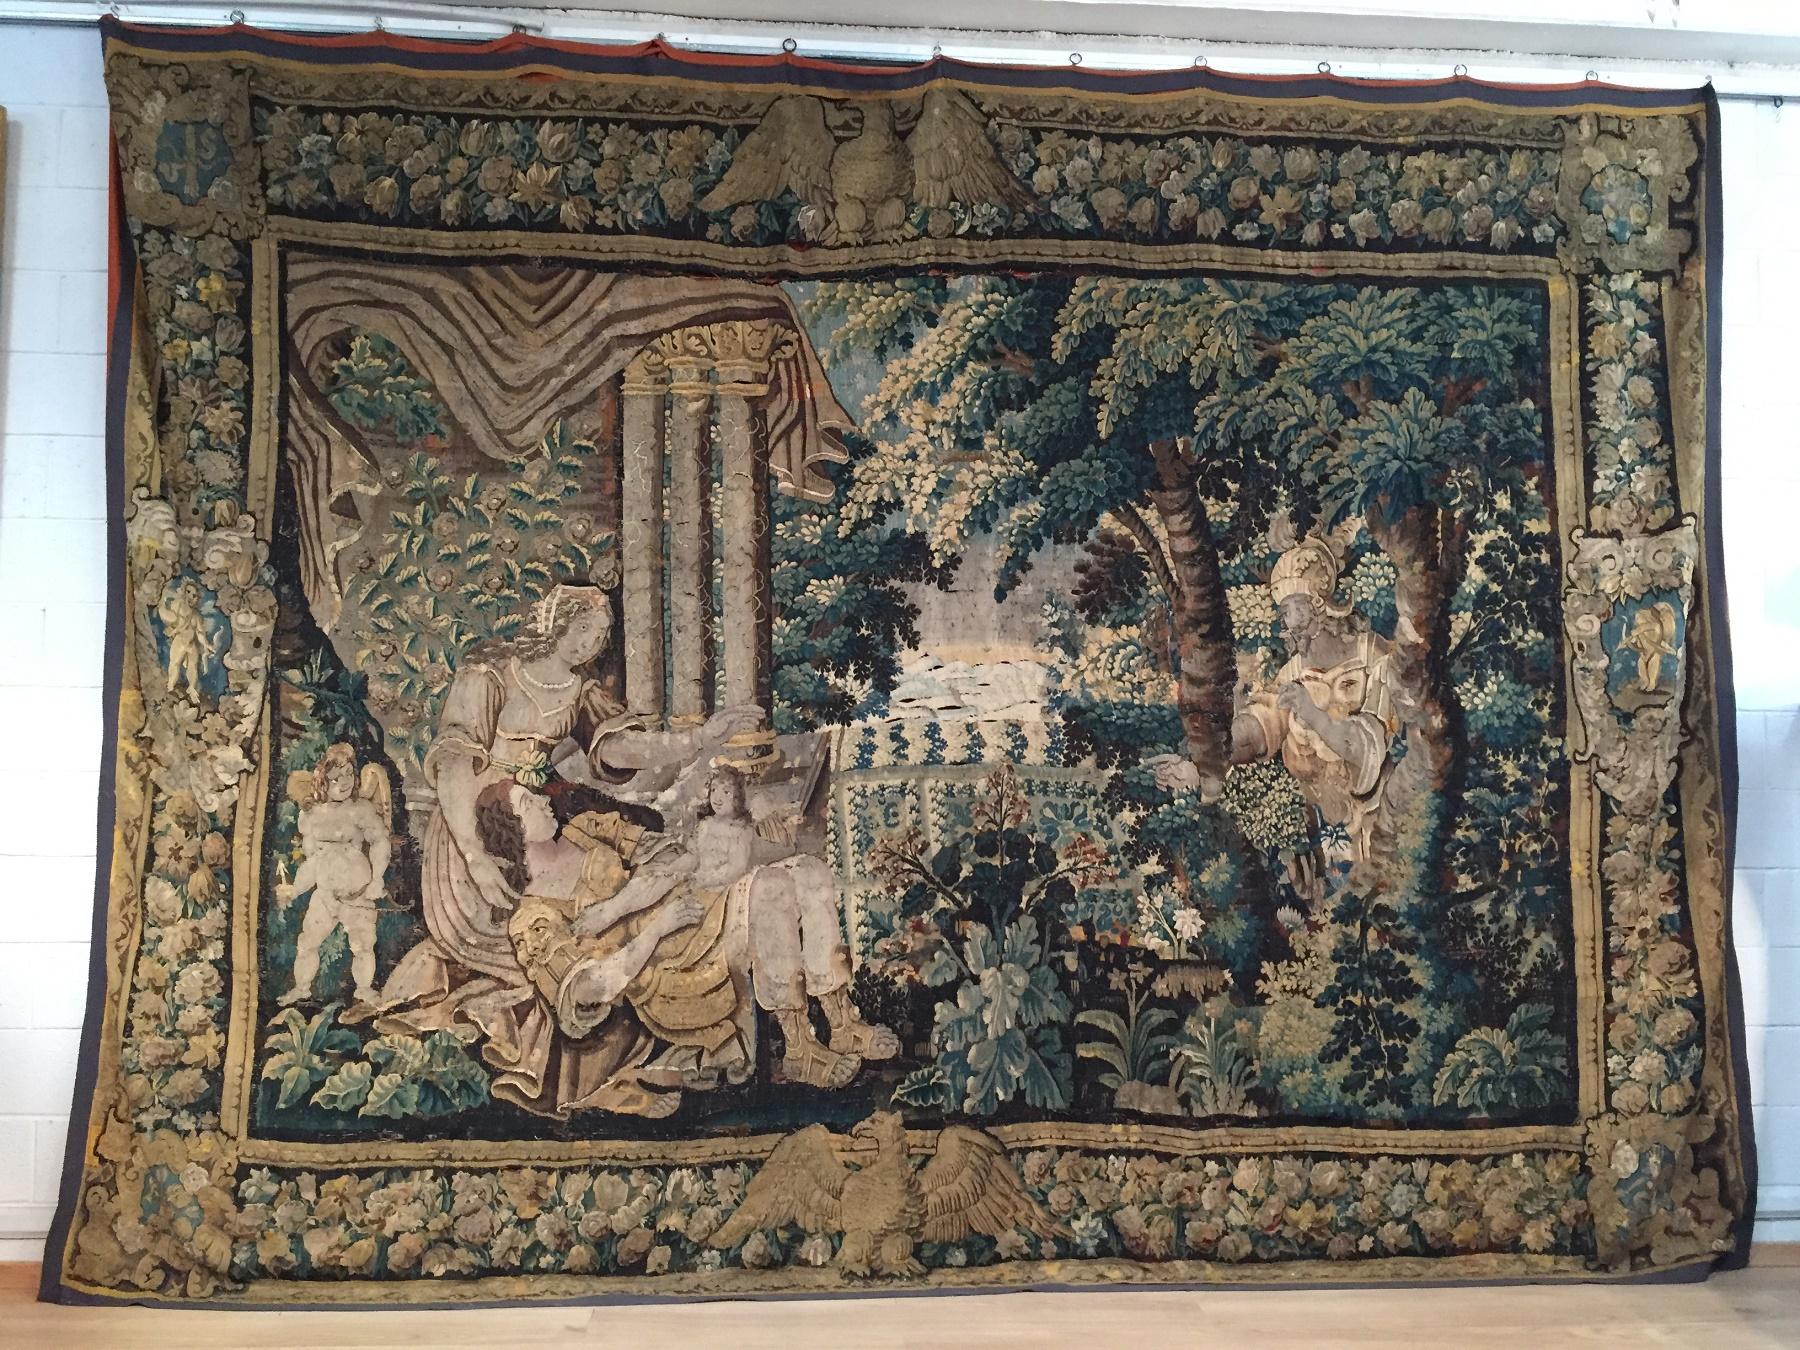 XVIe siècle, tapisserie flamande en bois orné
Flandre Bruxelles

Cette belle et précieuse tapisserie, d'une grande finesse d'exécution et réalisée avec des fils de laine, a été confectionnée au XVIe siècle en Flandre. Elle se rapproche